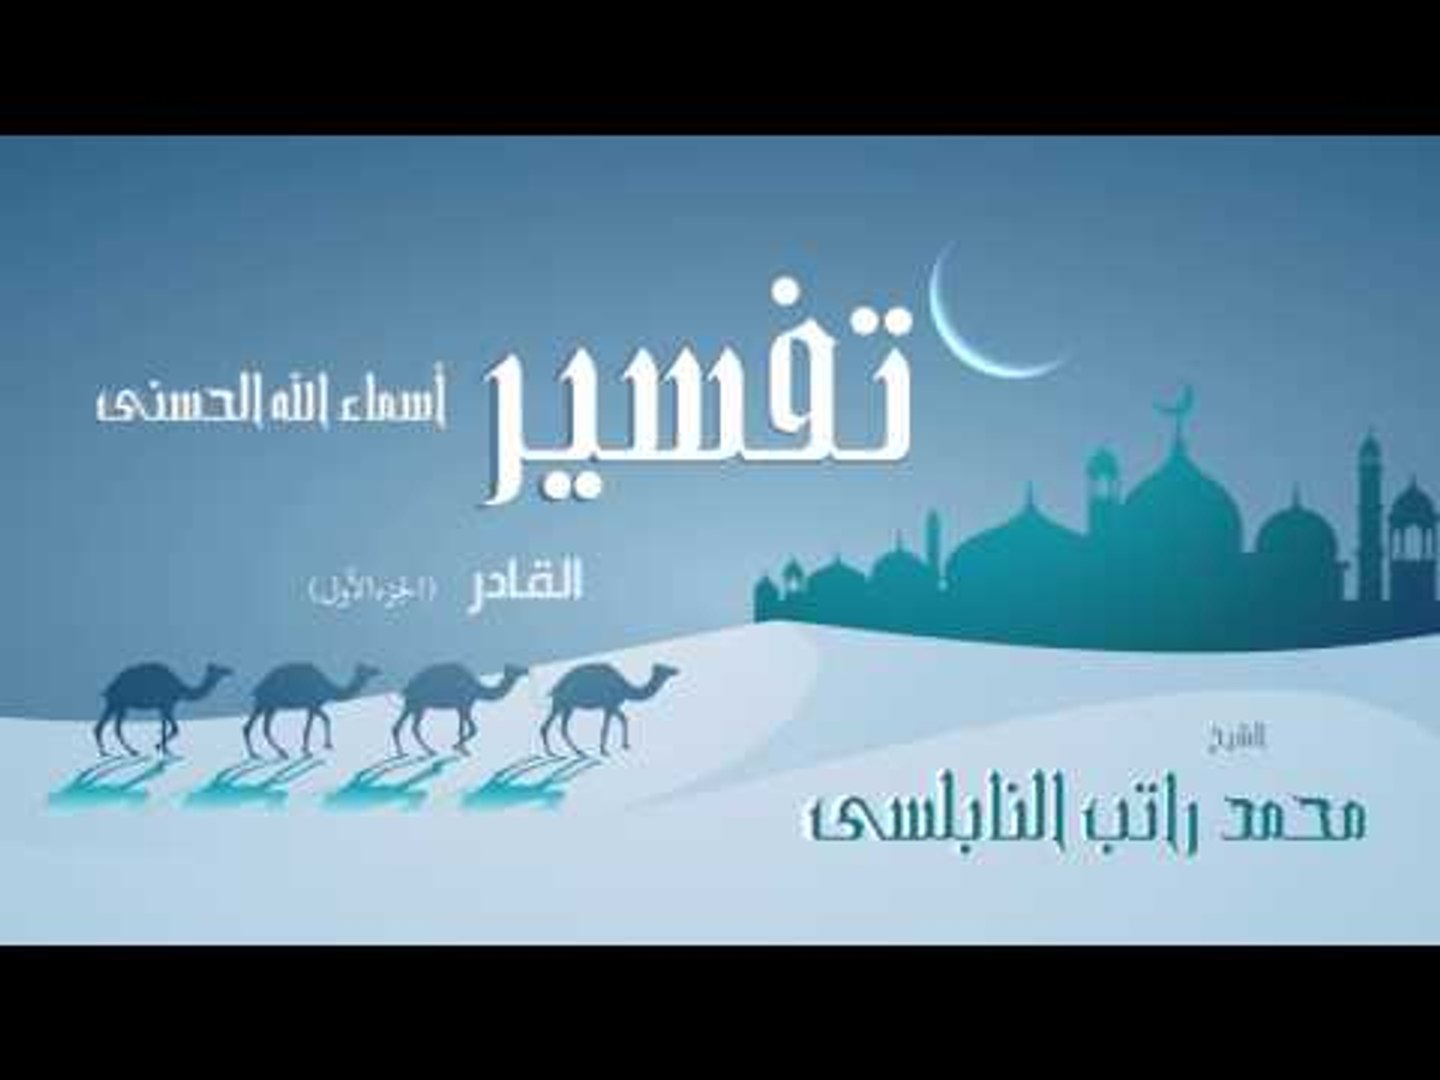 تفسير أسماء الله الحسنى القادر الجزء الأول للشيخ محمد راتب النابلسى فيديو Dailymotion